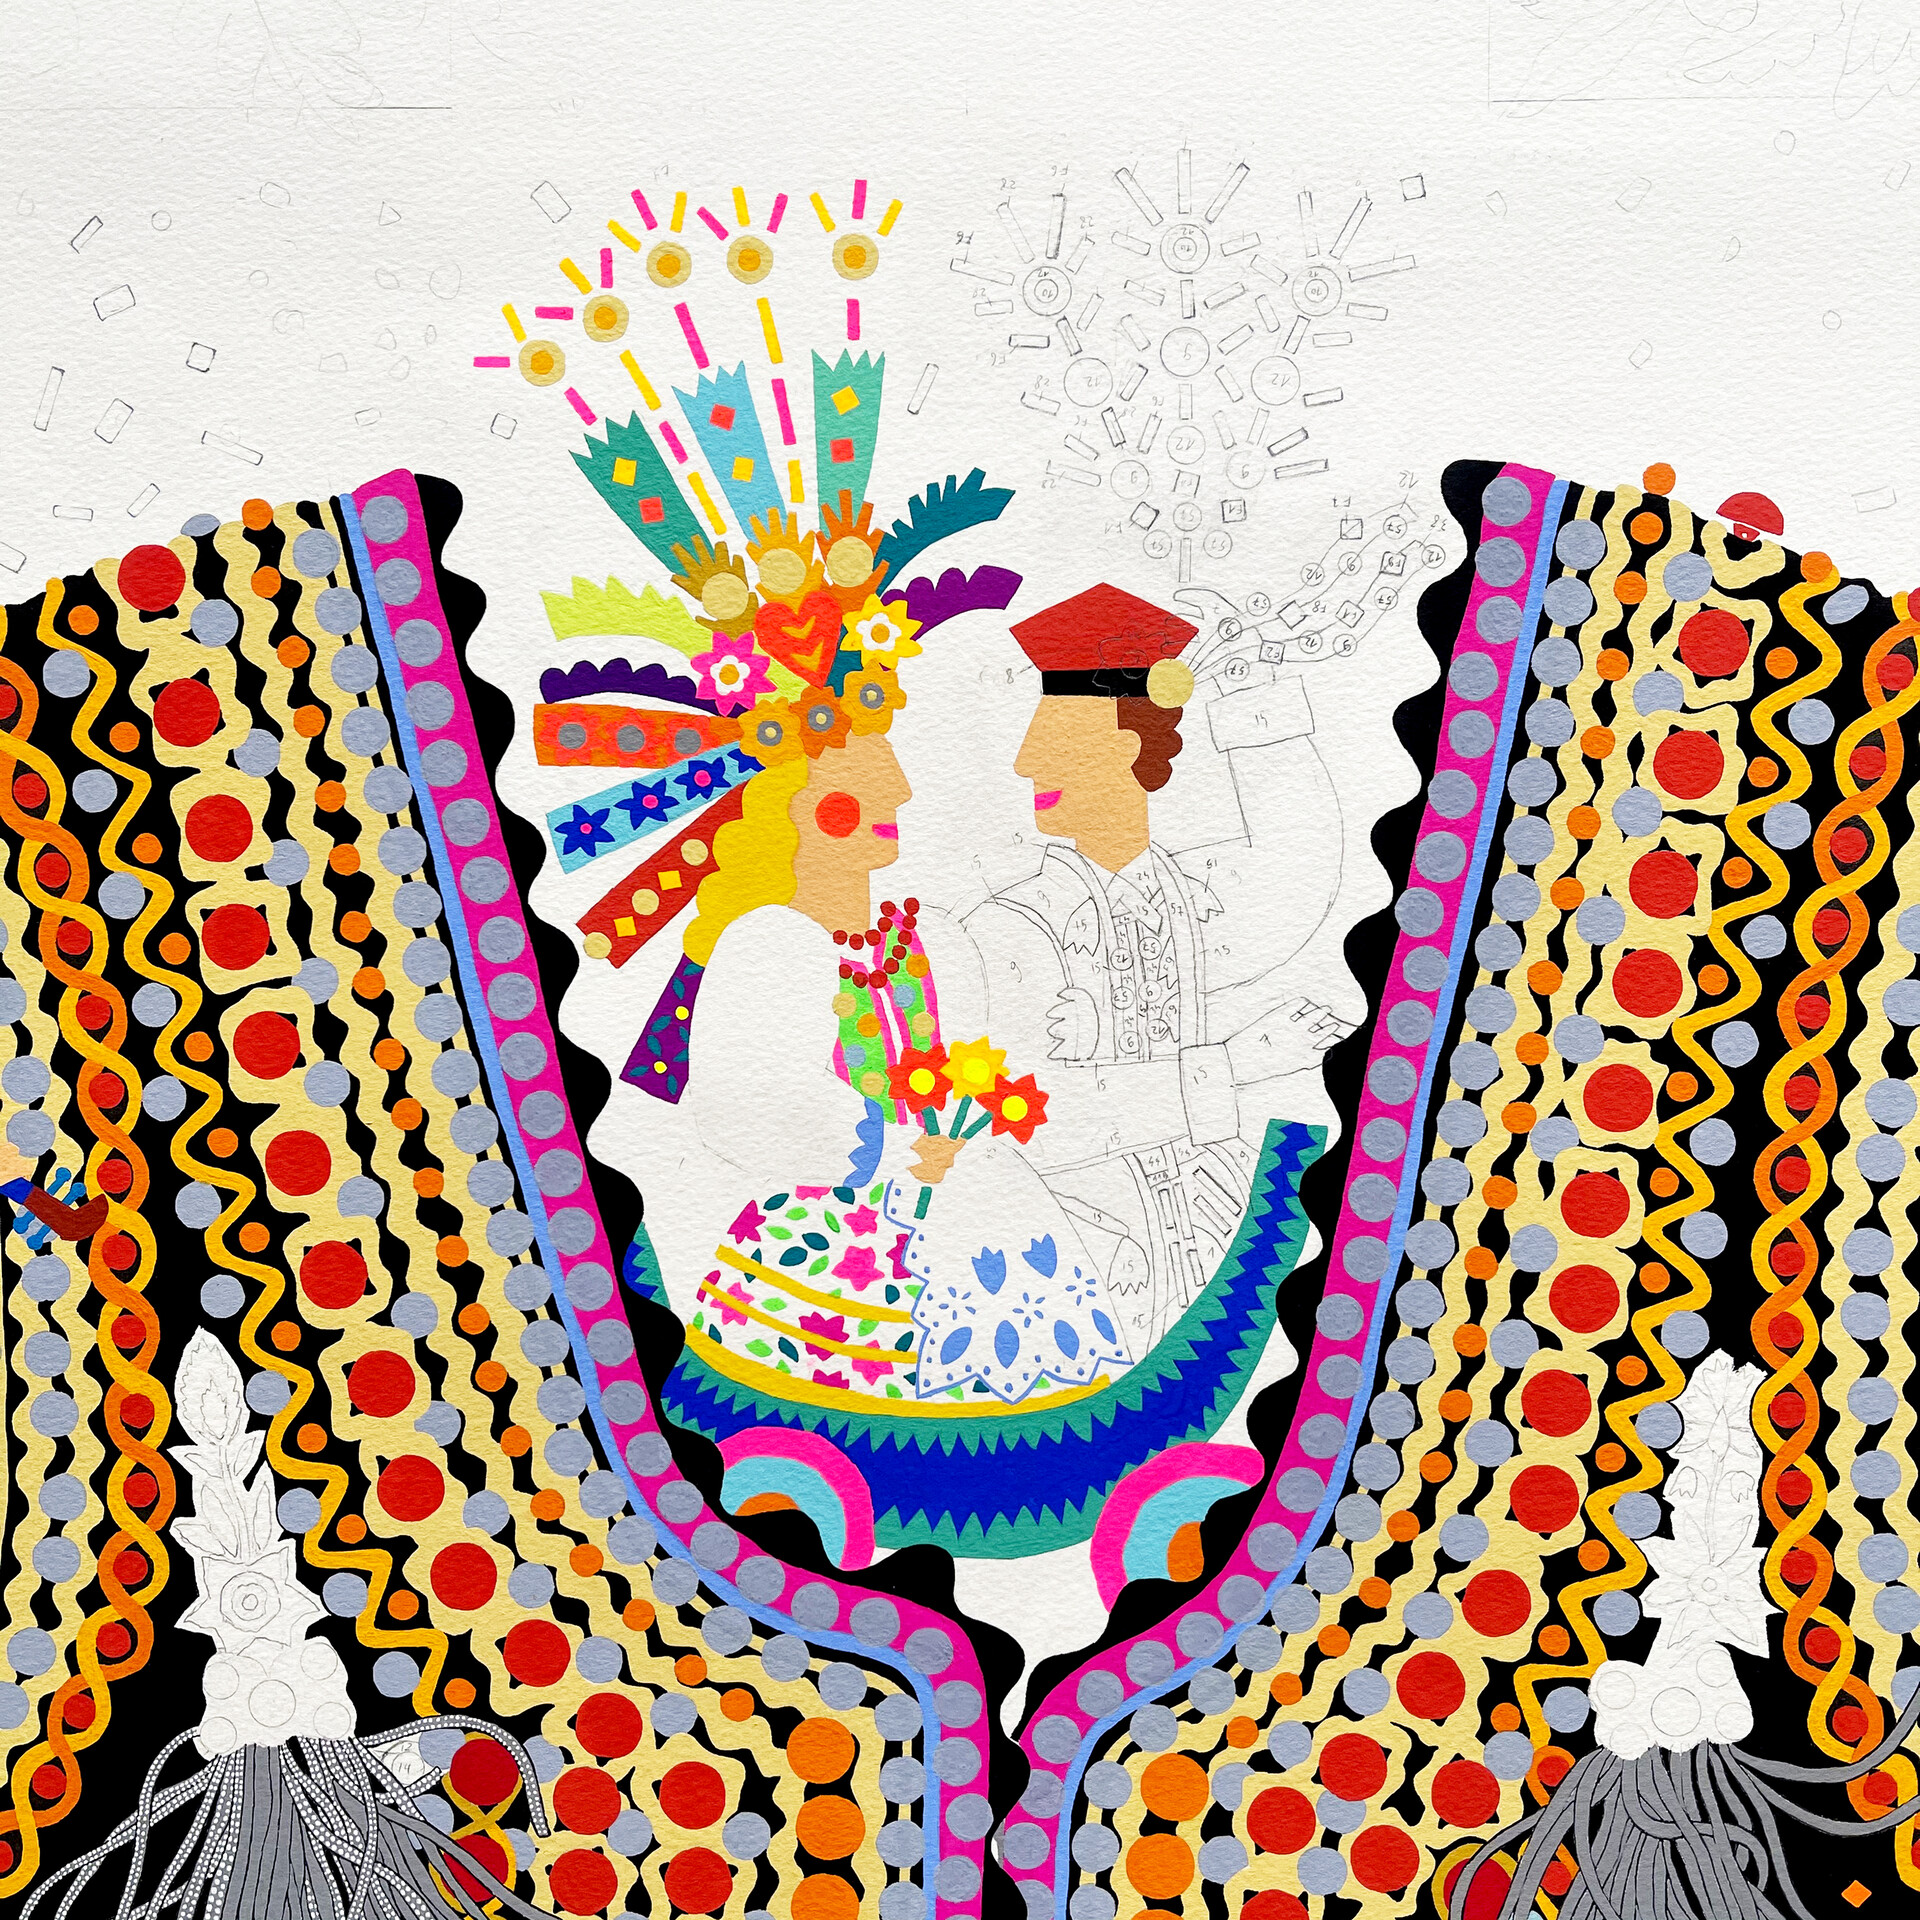 Original “Costume de fête” painting is done with gouache on paper, 100 x 100 cm